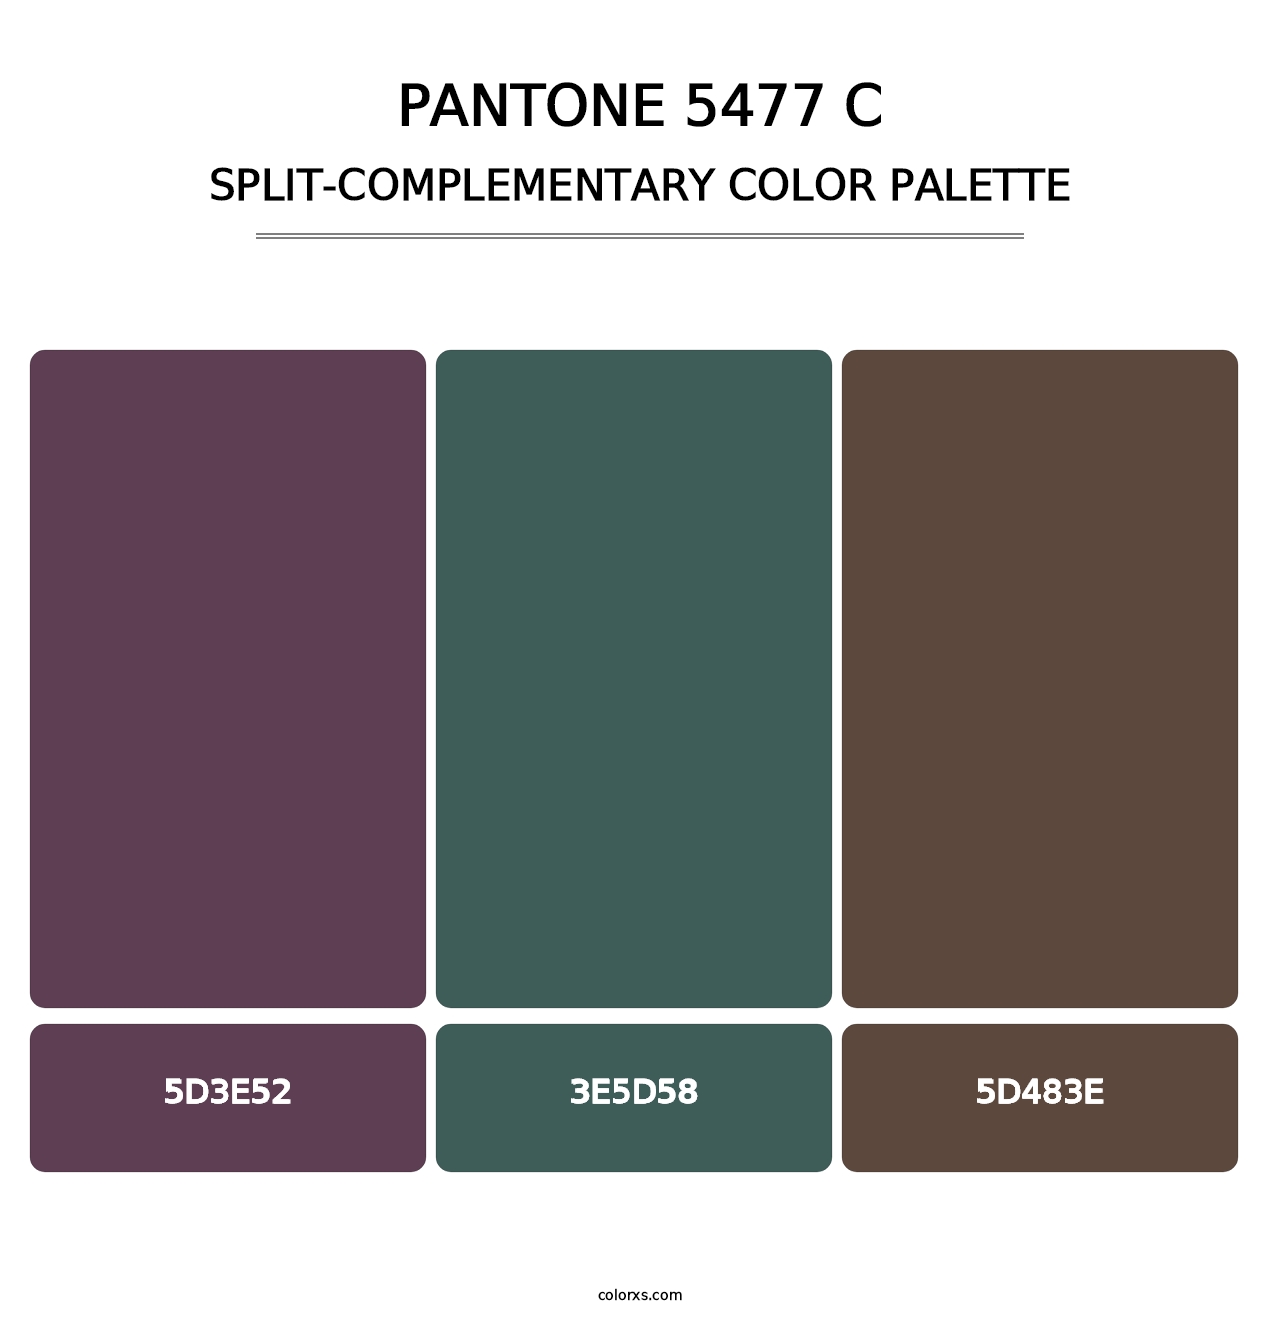 PANTONE 5477 C - Split-Complementary Color Palette